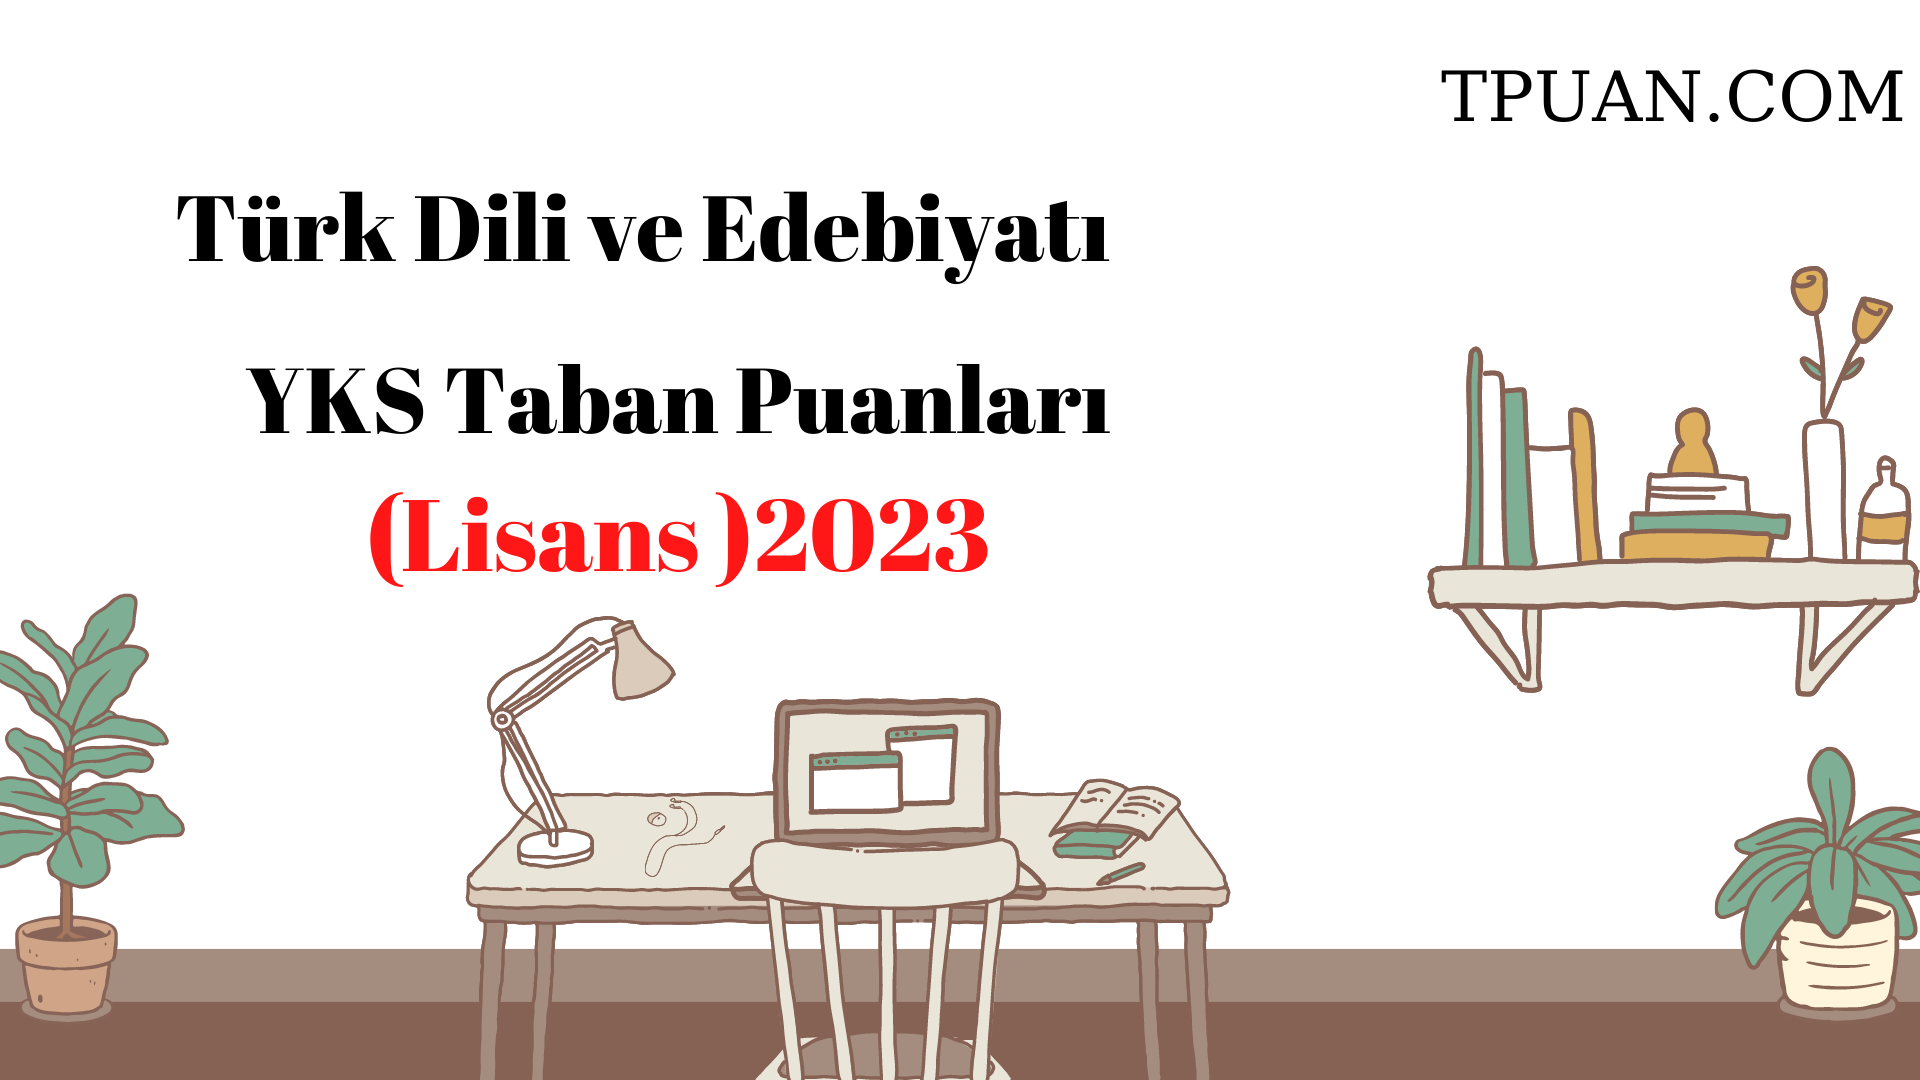  Türk Dili ve Edebiyatı Bölümü YKS Taban Puanları (4 Yıllık) 2023